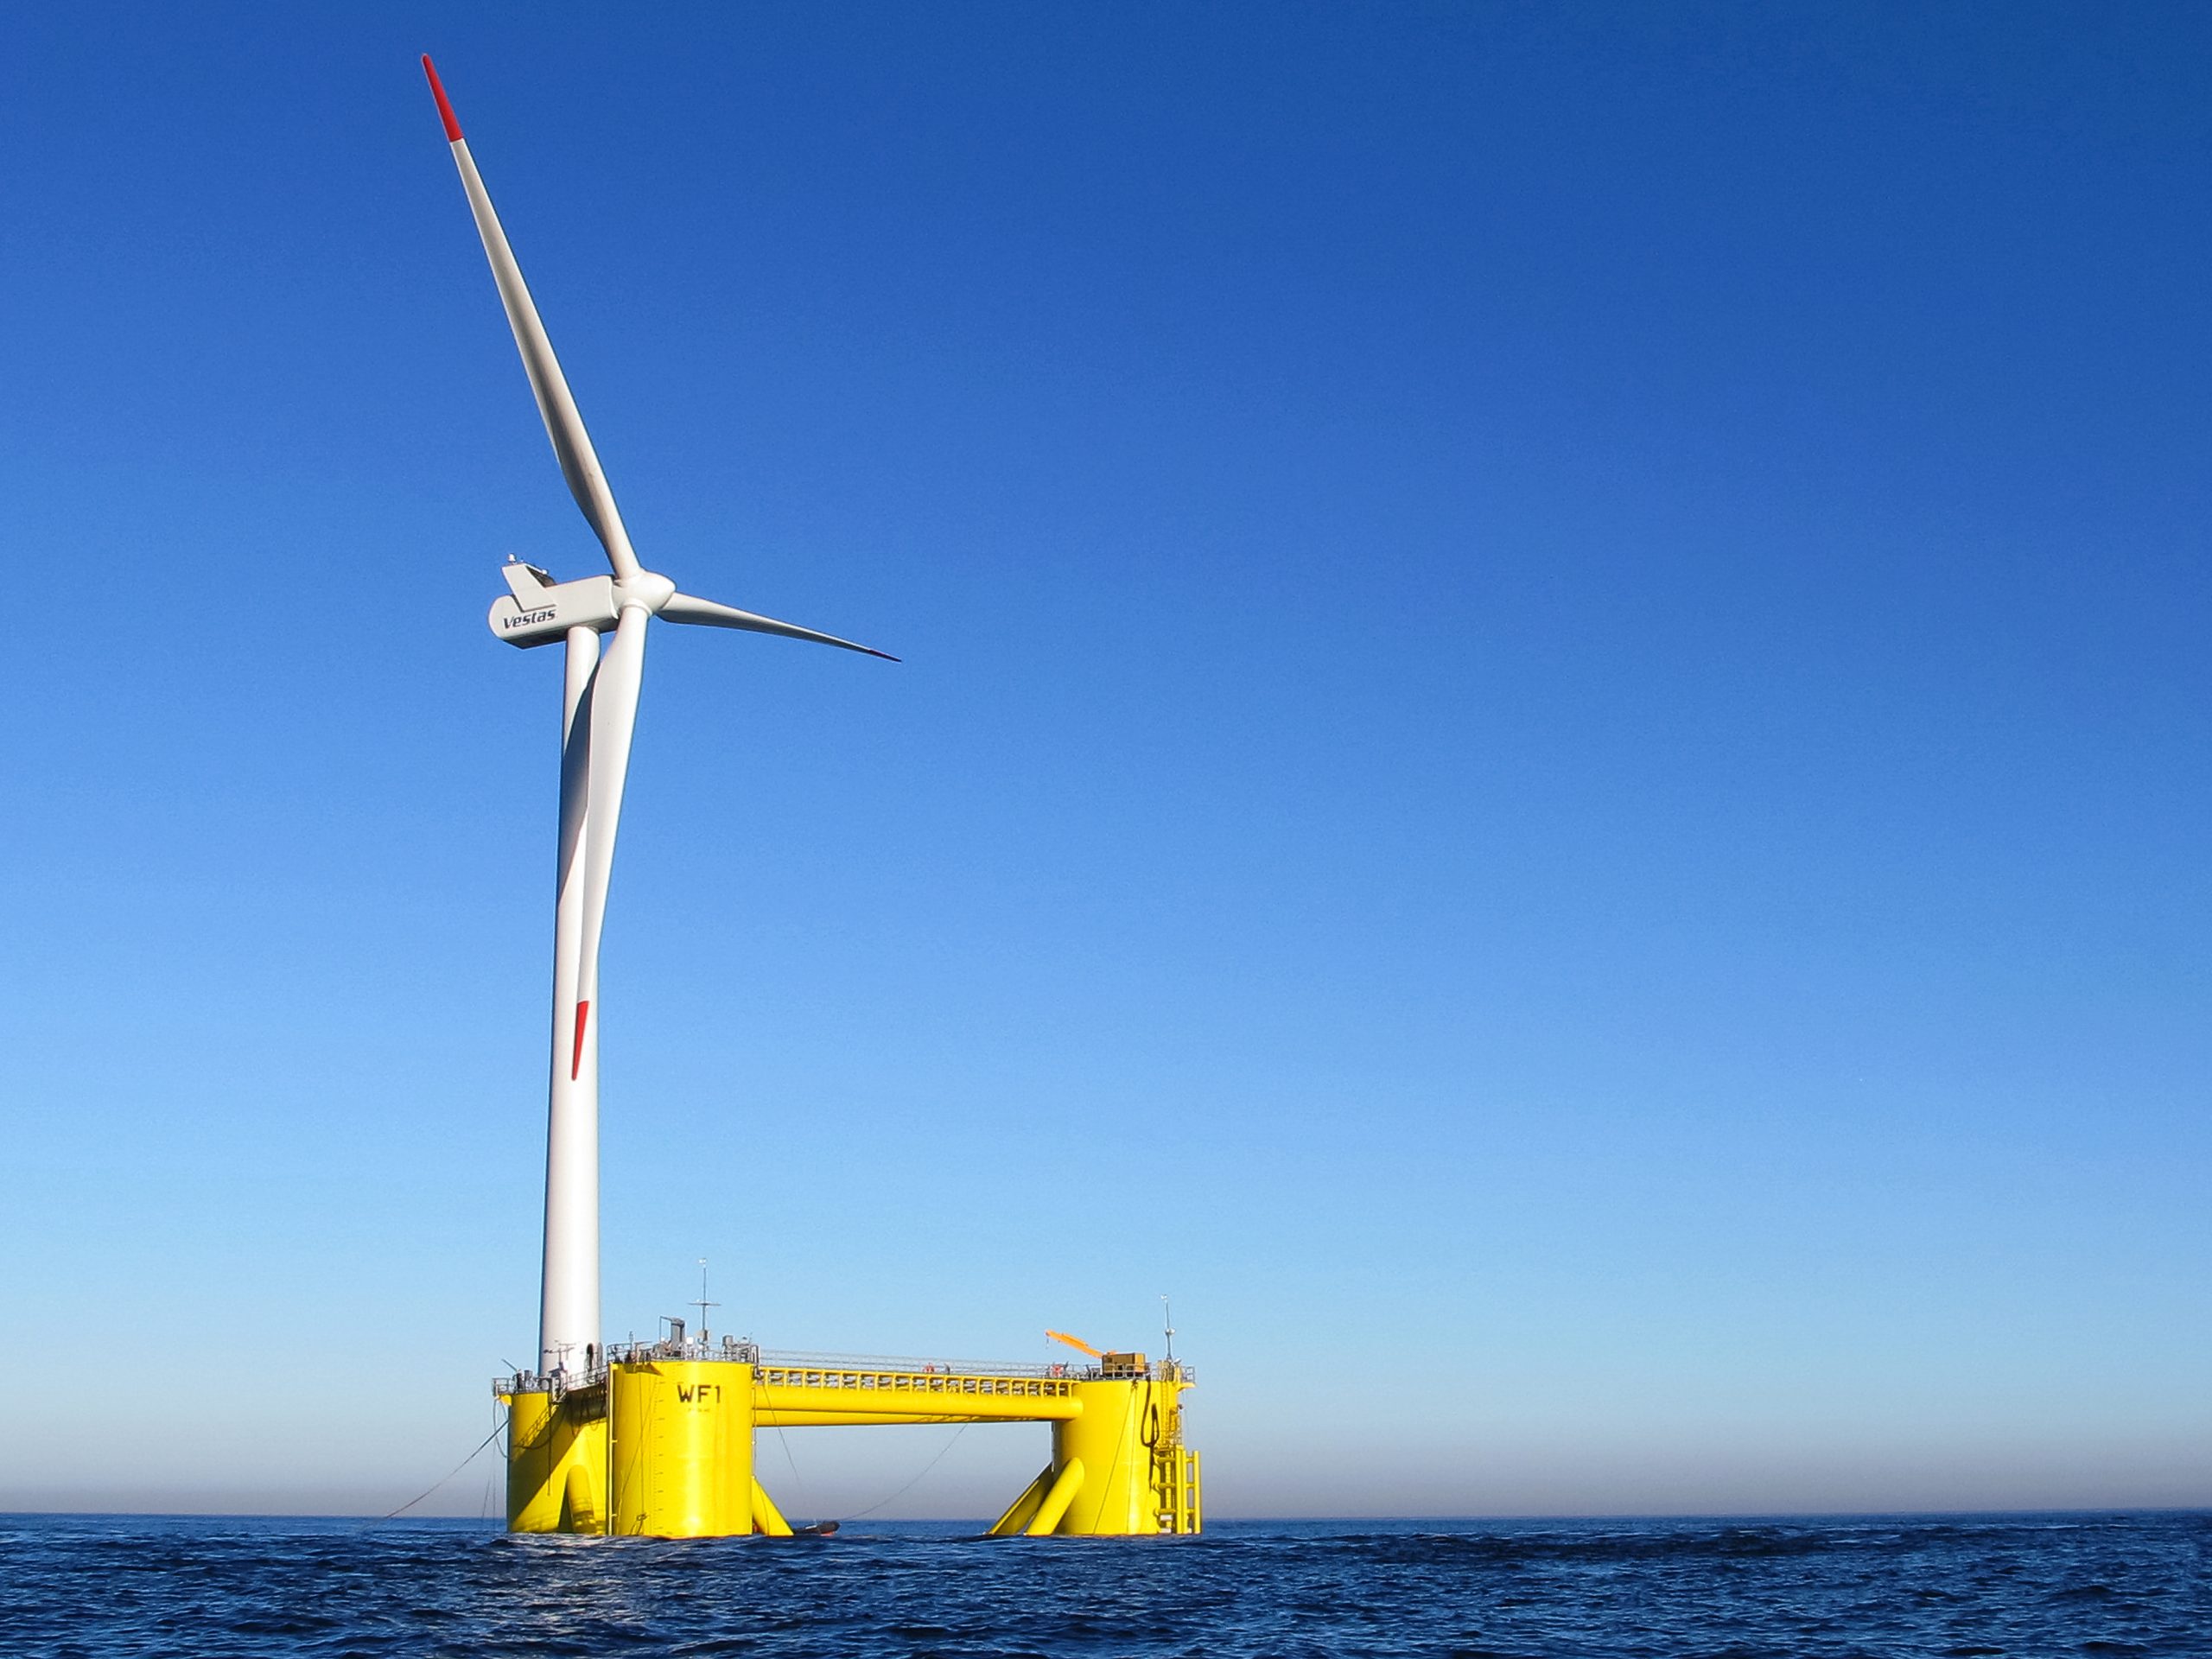 Floating wind turbine at sea, illustration